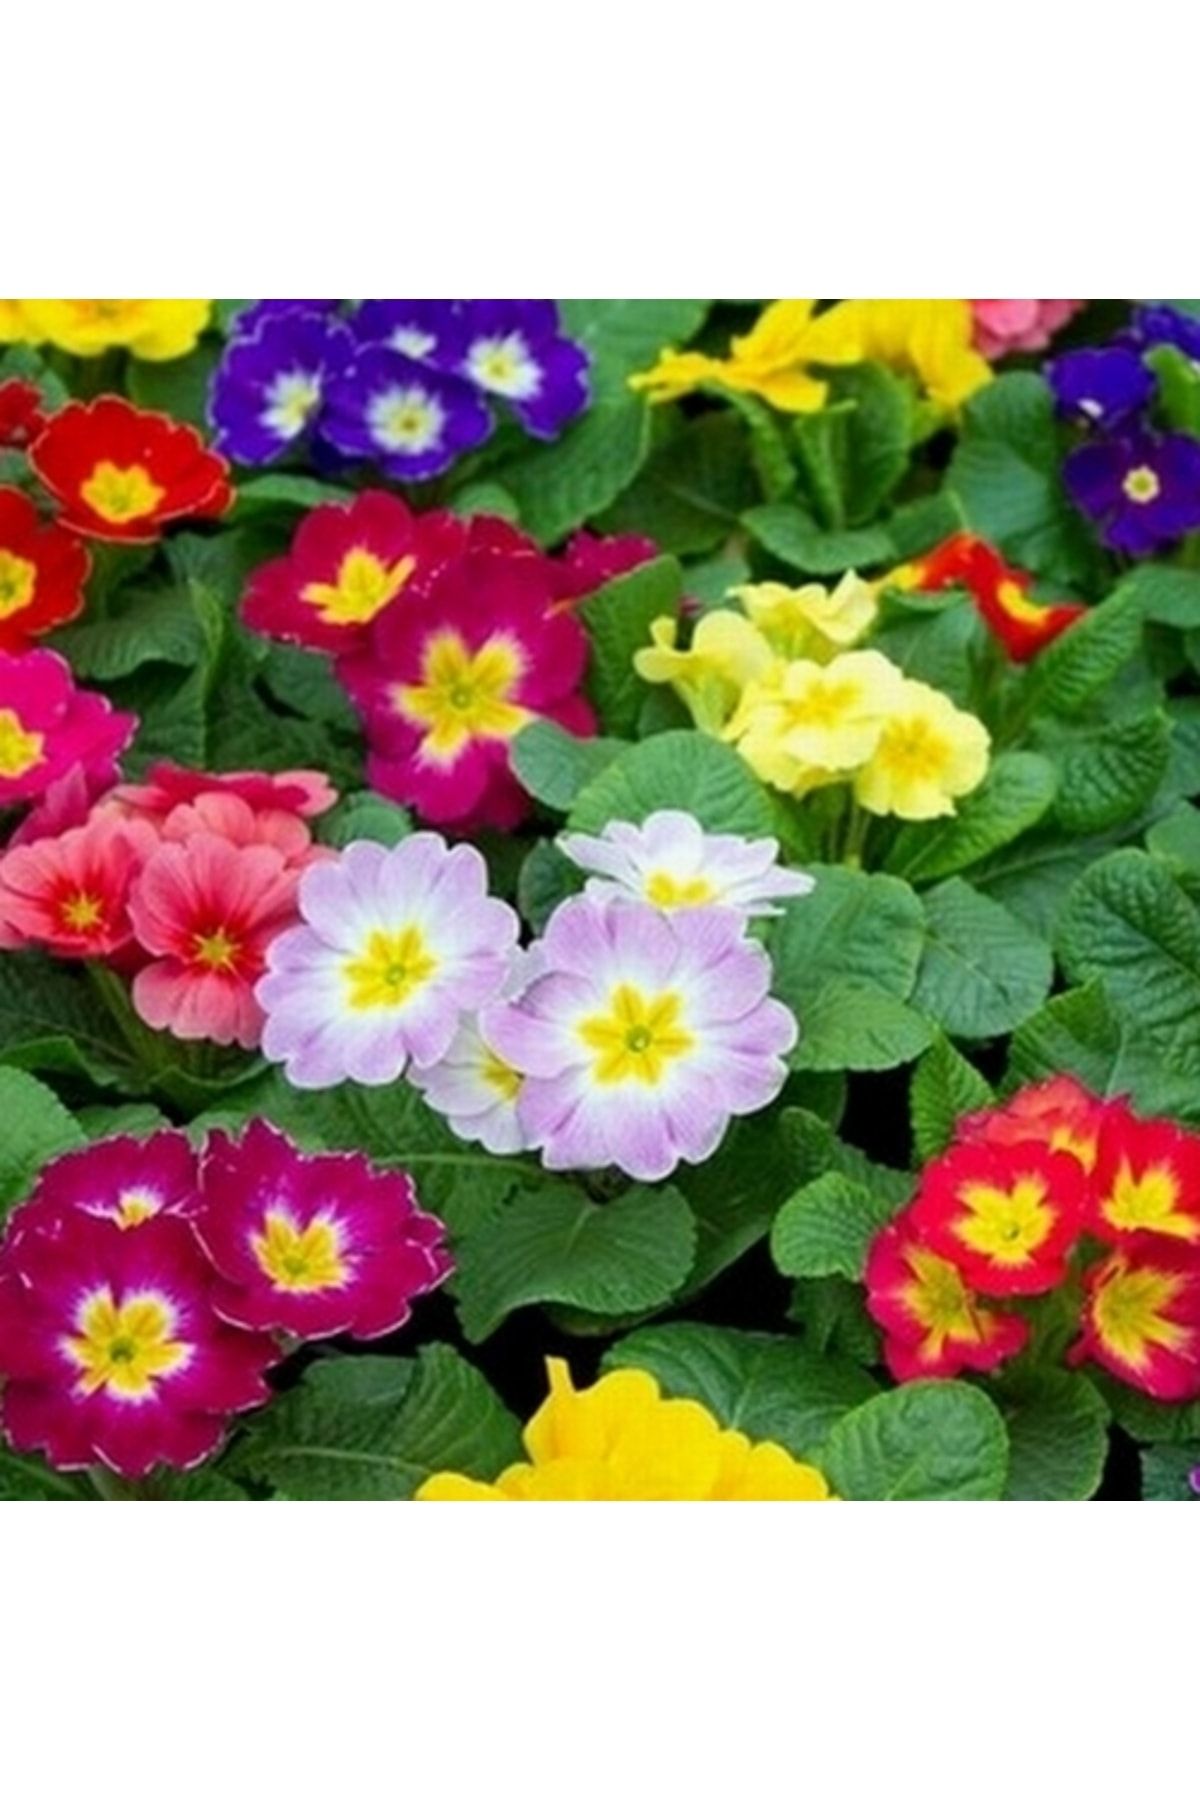 Day 100 Adet 10 Farklı Renk Çuha Çiçek Tohumu + 10 Adet Hediye K.renk Zambak Çiçek Tohumu